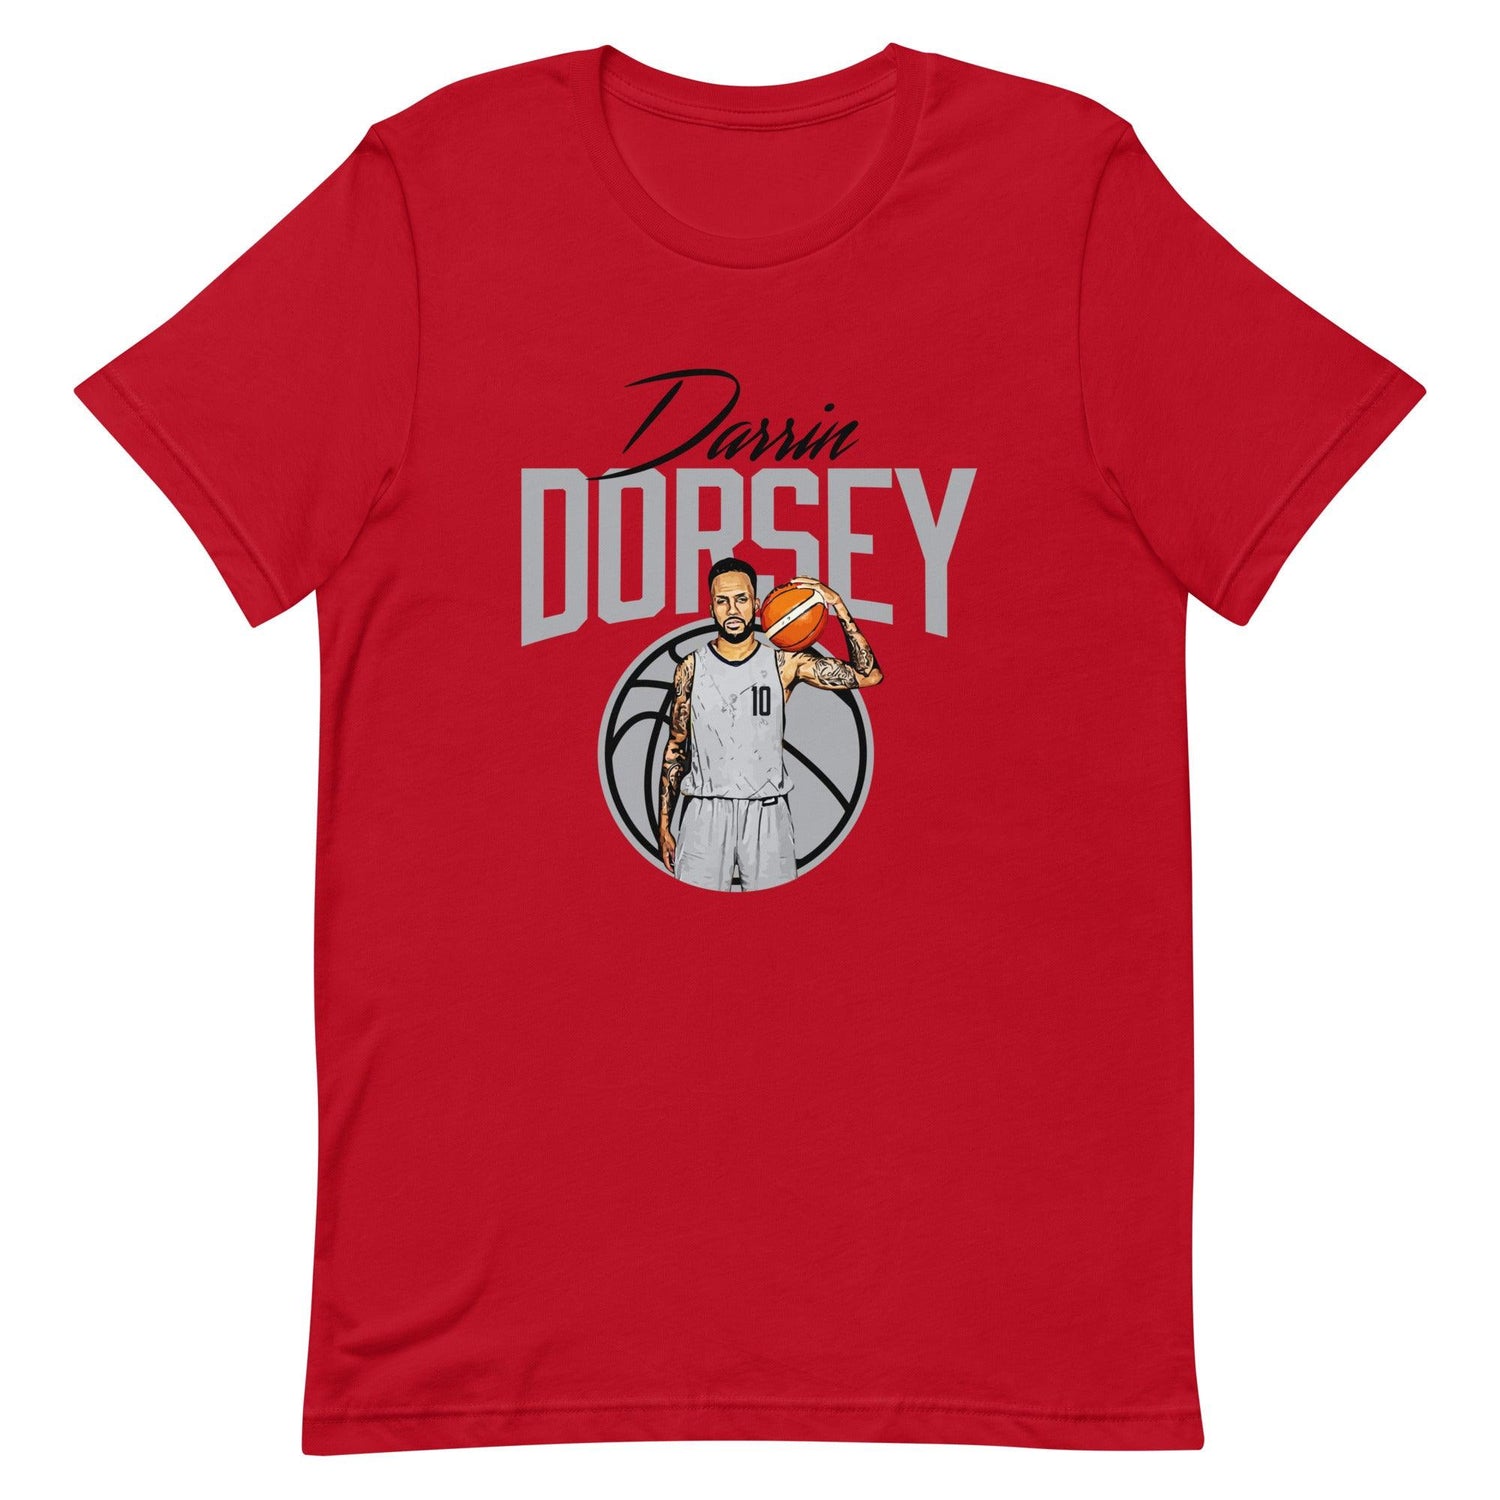 Darrin Dorsey "Gameday" t-shirt - Fan Arch